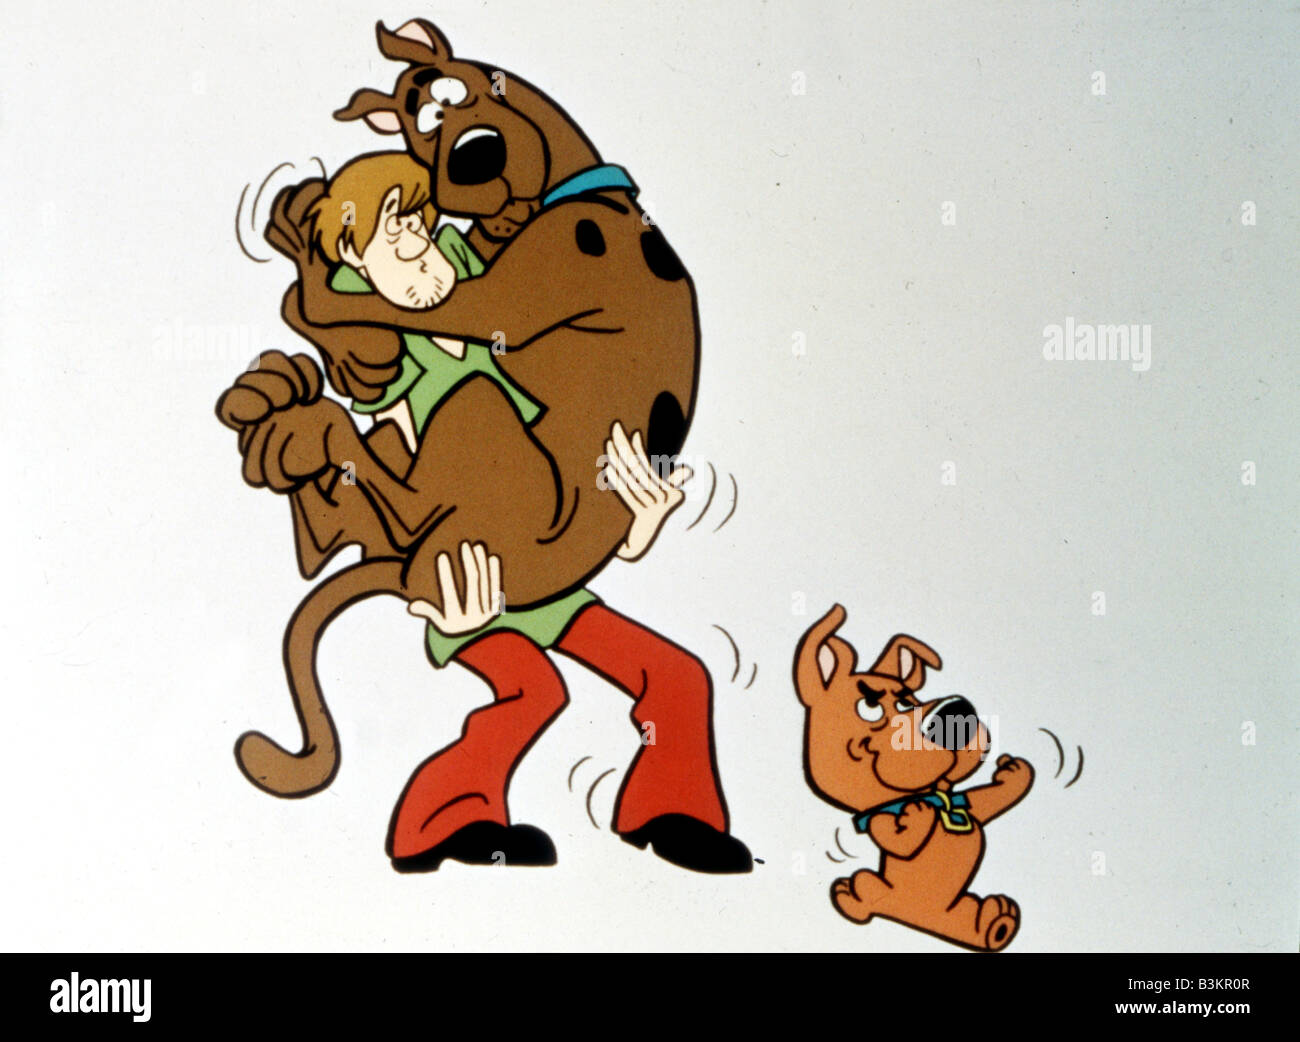 SCOOBY DOO Hanna-Barbera cartoon character Stock Photo - Alamy